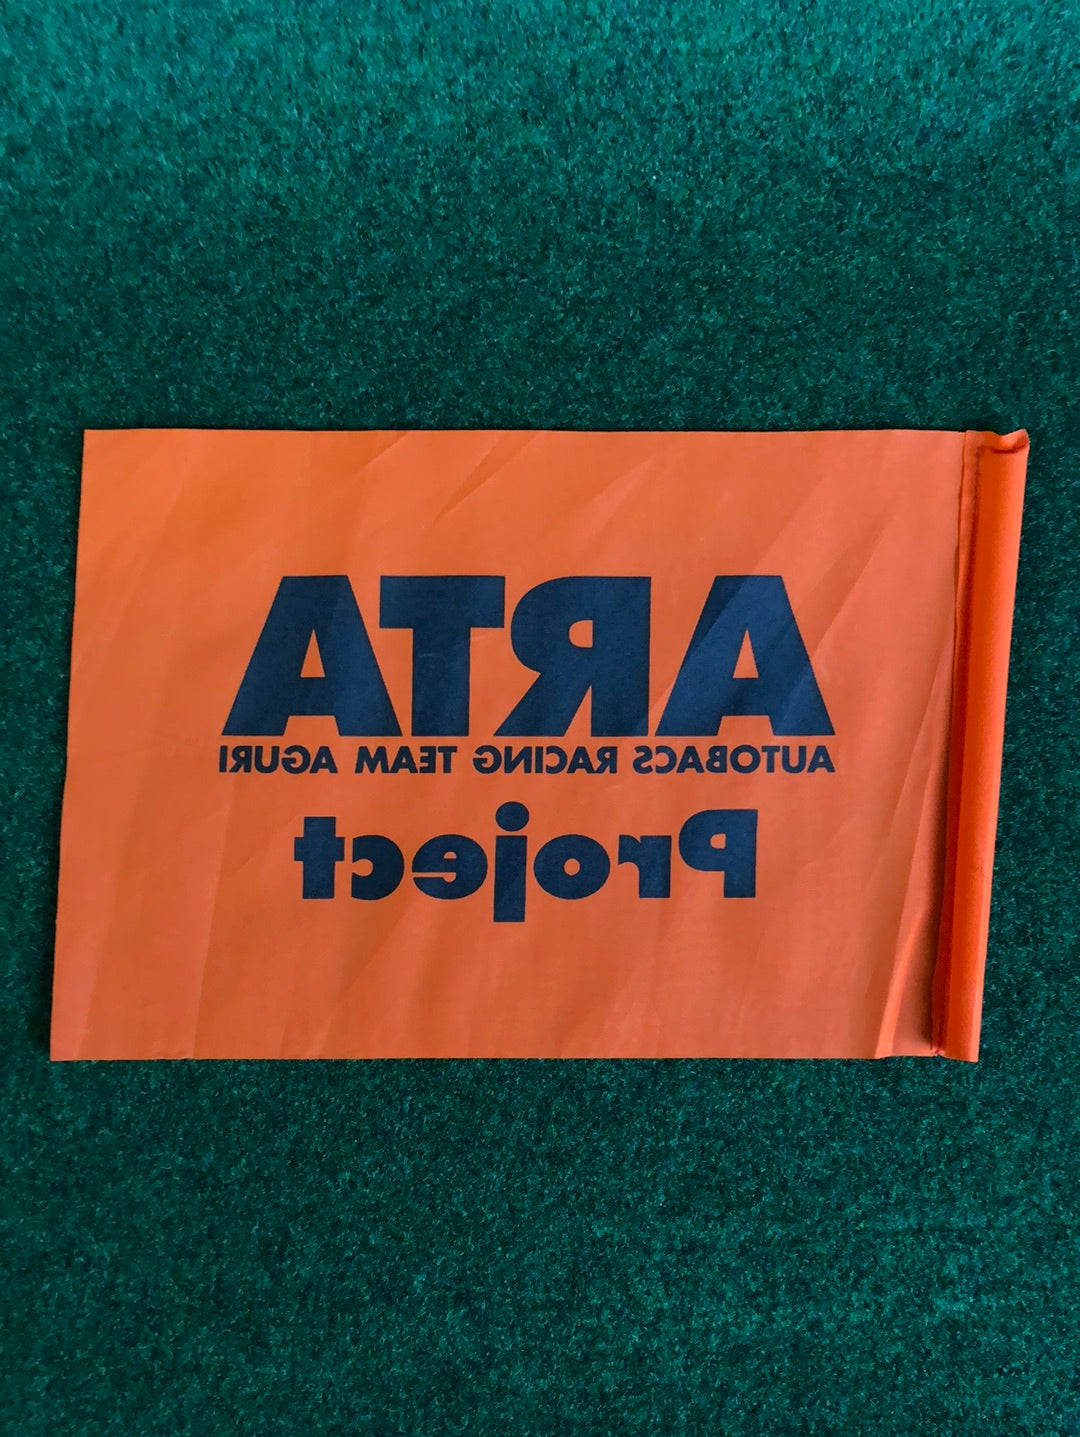 ARTA Autobacs - Super GT Small Event Cheering Flag